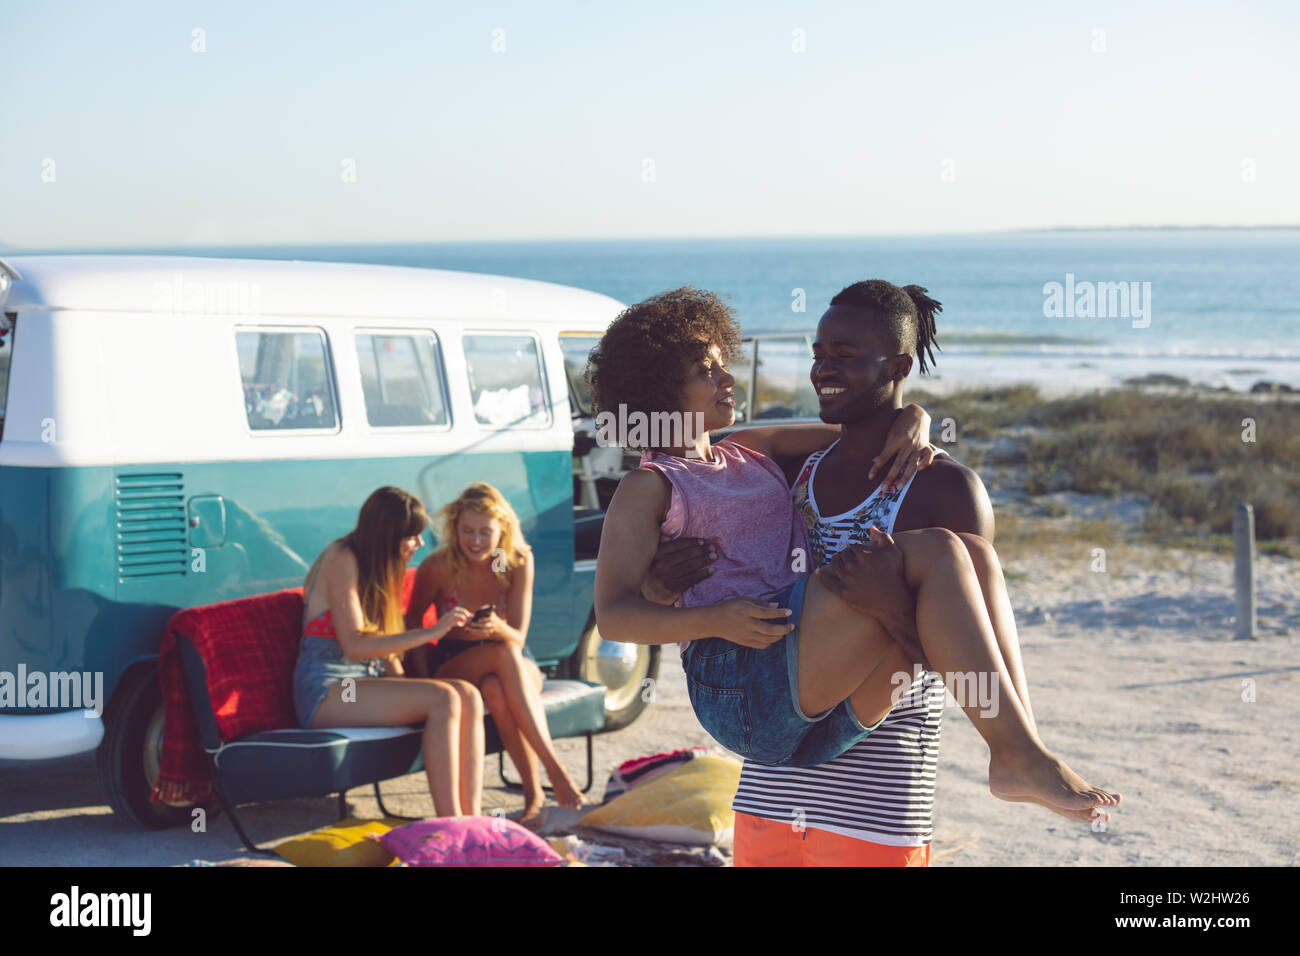 Femme Homme tenant dans ses bras près de camping-van at beach Banque D'Images